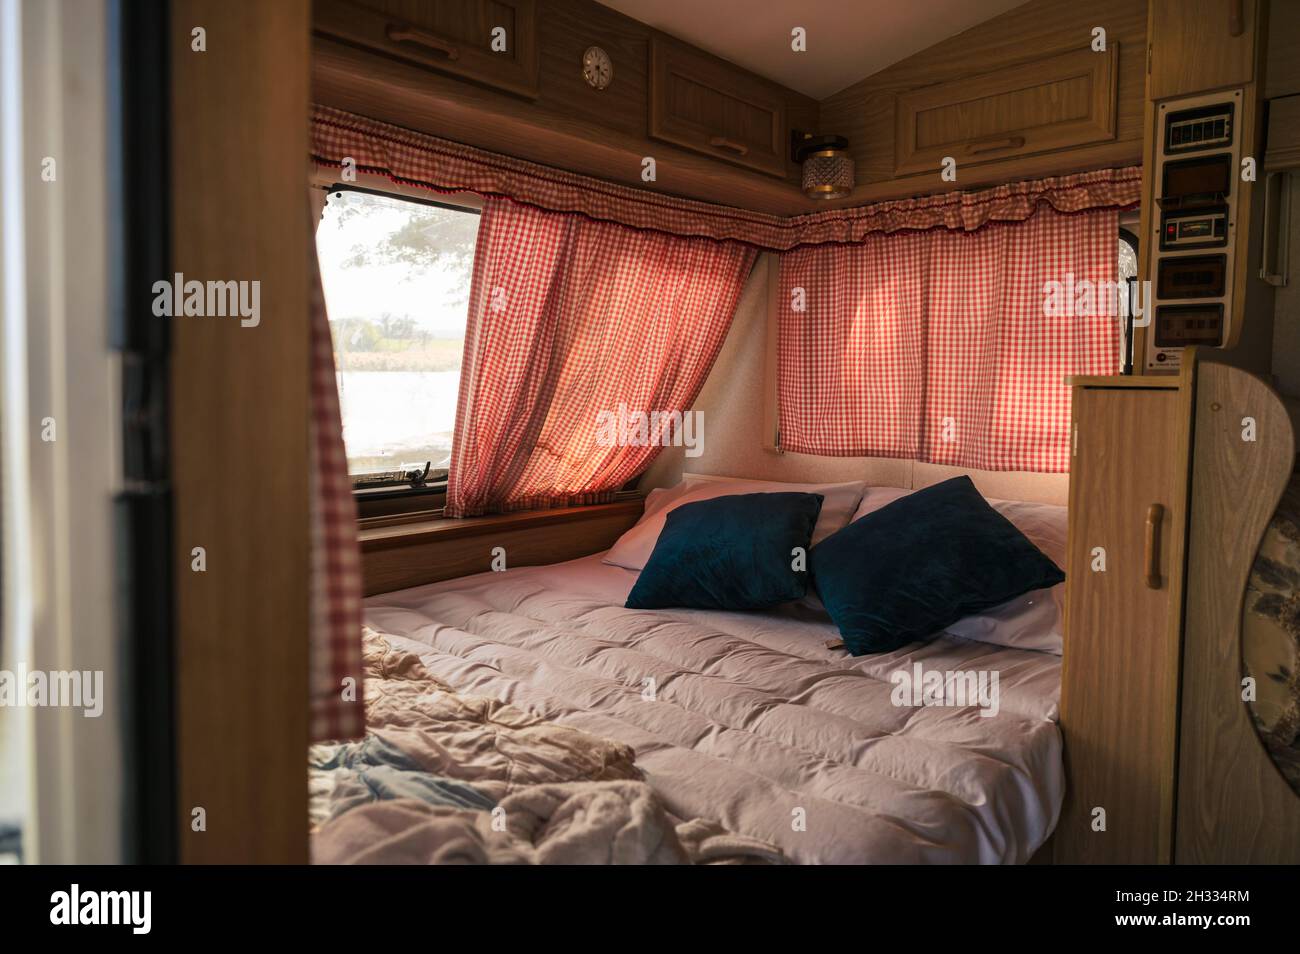 Im Inneren von niemand Wohnmobil mit Bett, Kissen, Vorhang auf